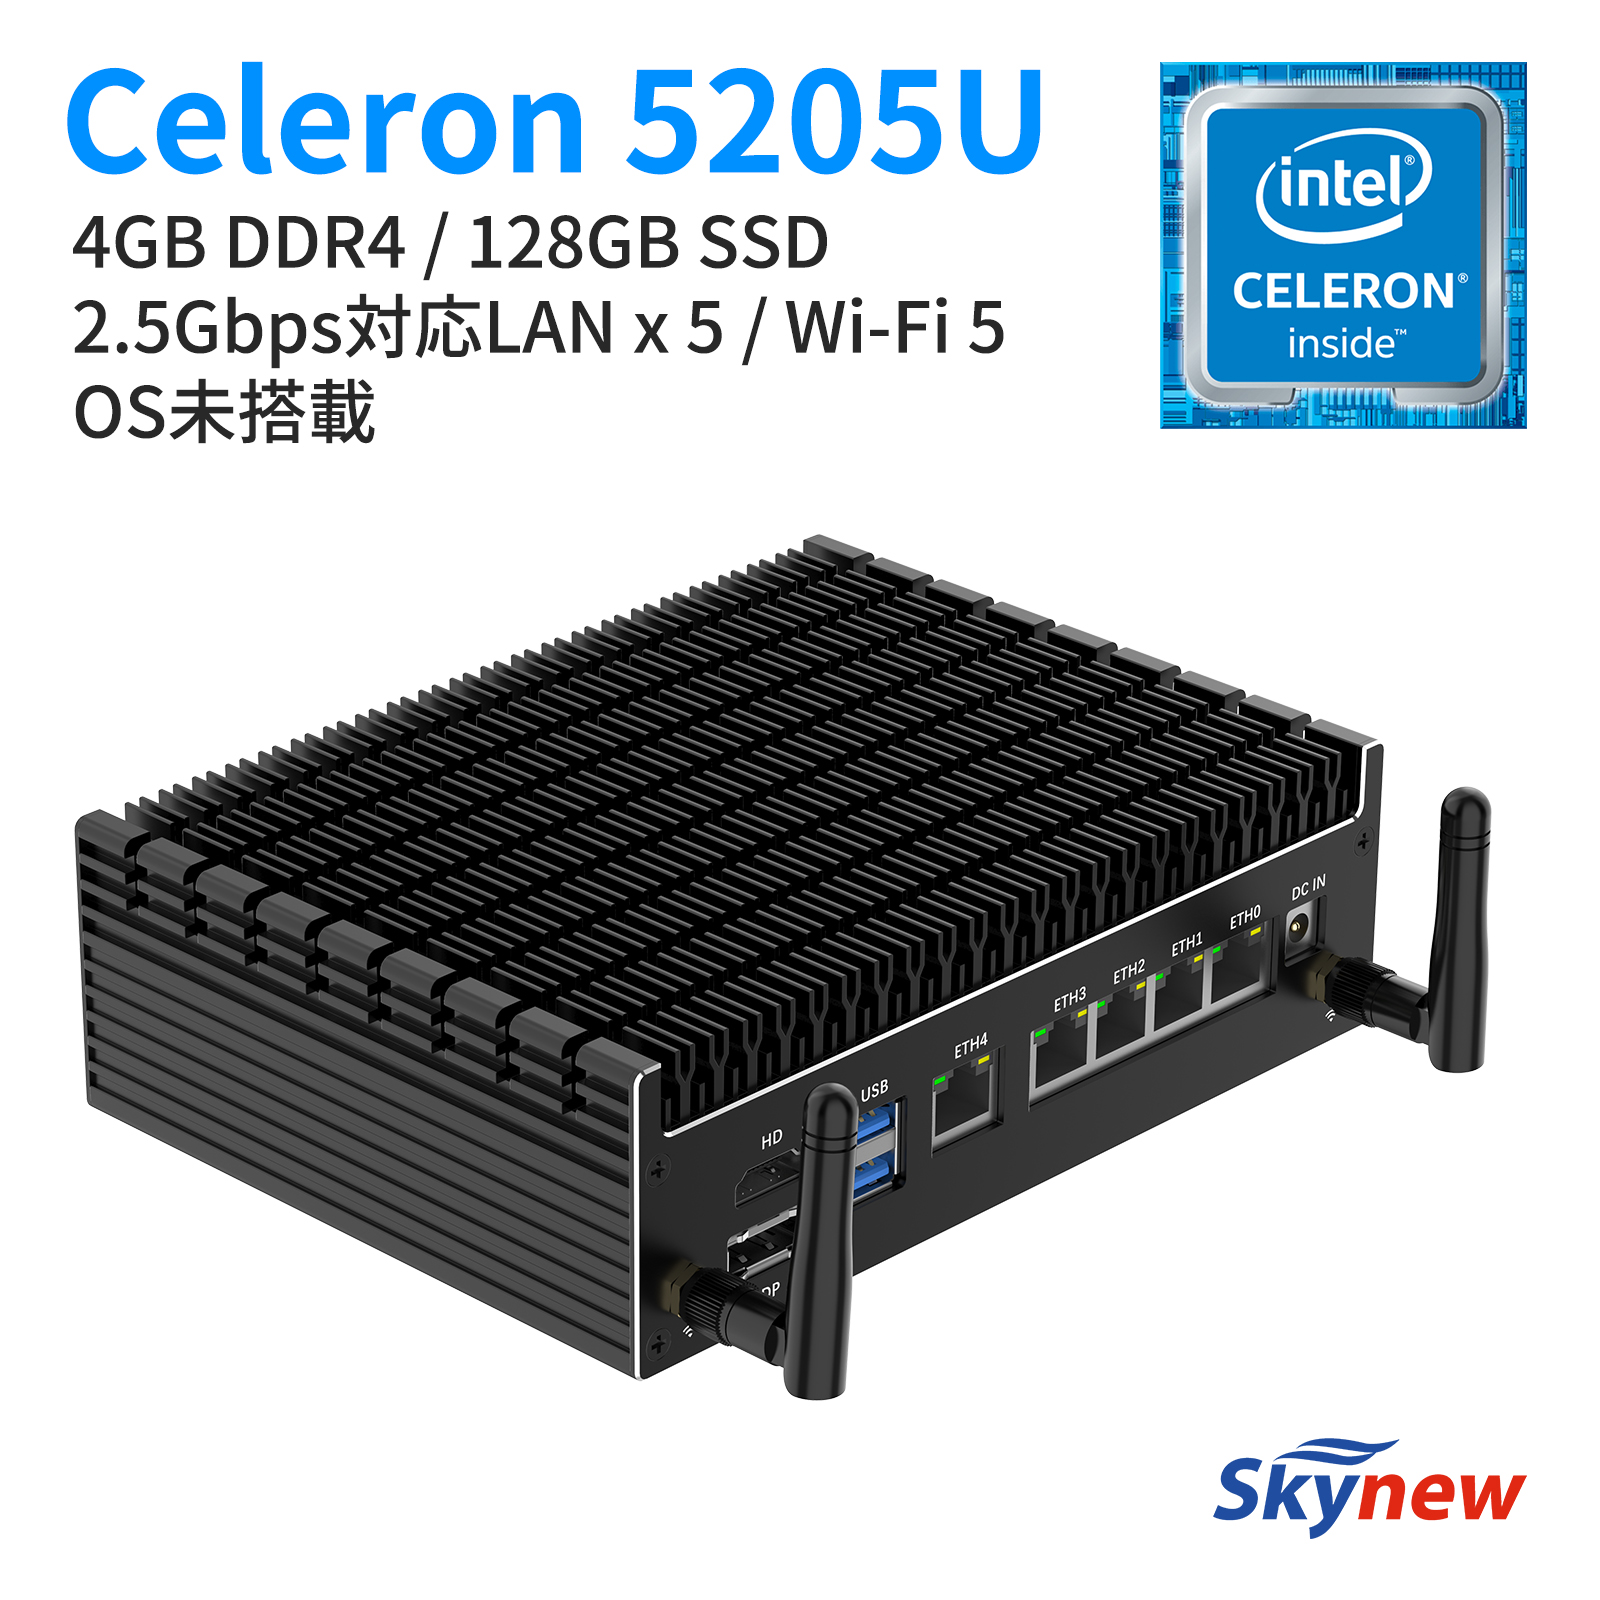 Skynew ファンレス ミニPC 静音 Celeron 5205U / 4GB/ 128GB 低消費電力 ミニPC OS未搭載 RTC/Wake  On Lan/PXE Boot/LAN x 5 / Wi-Fi & Bluetooth搭載 業務用 K15